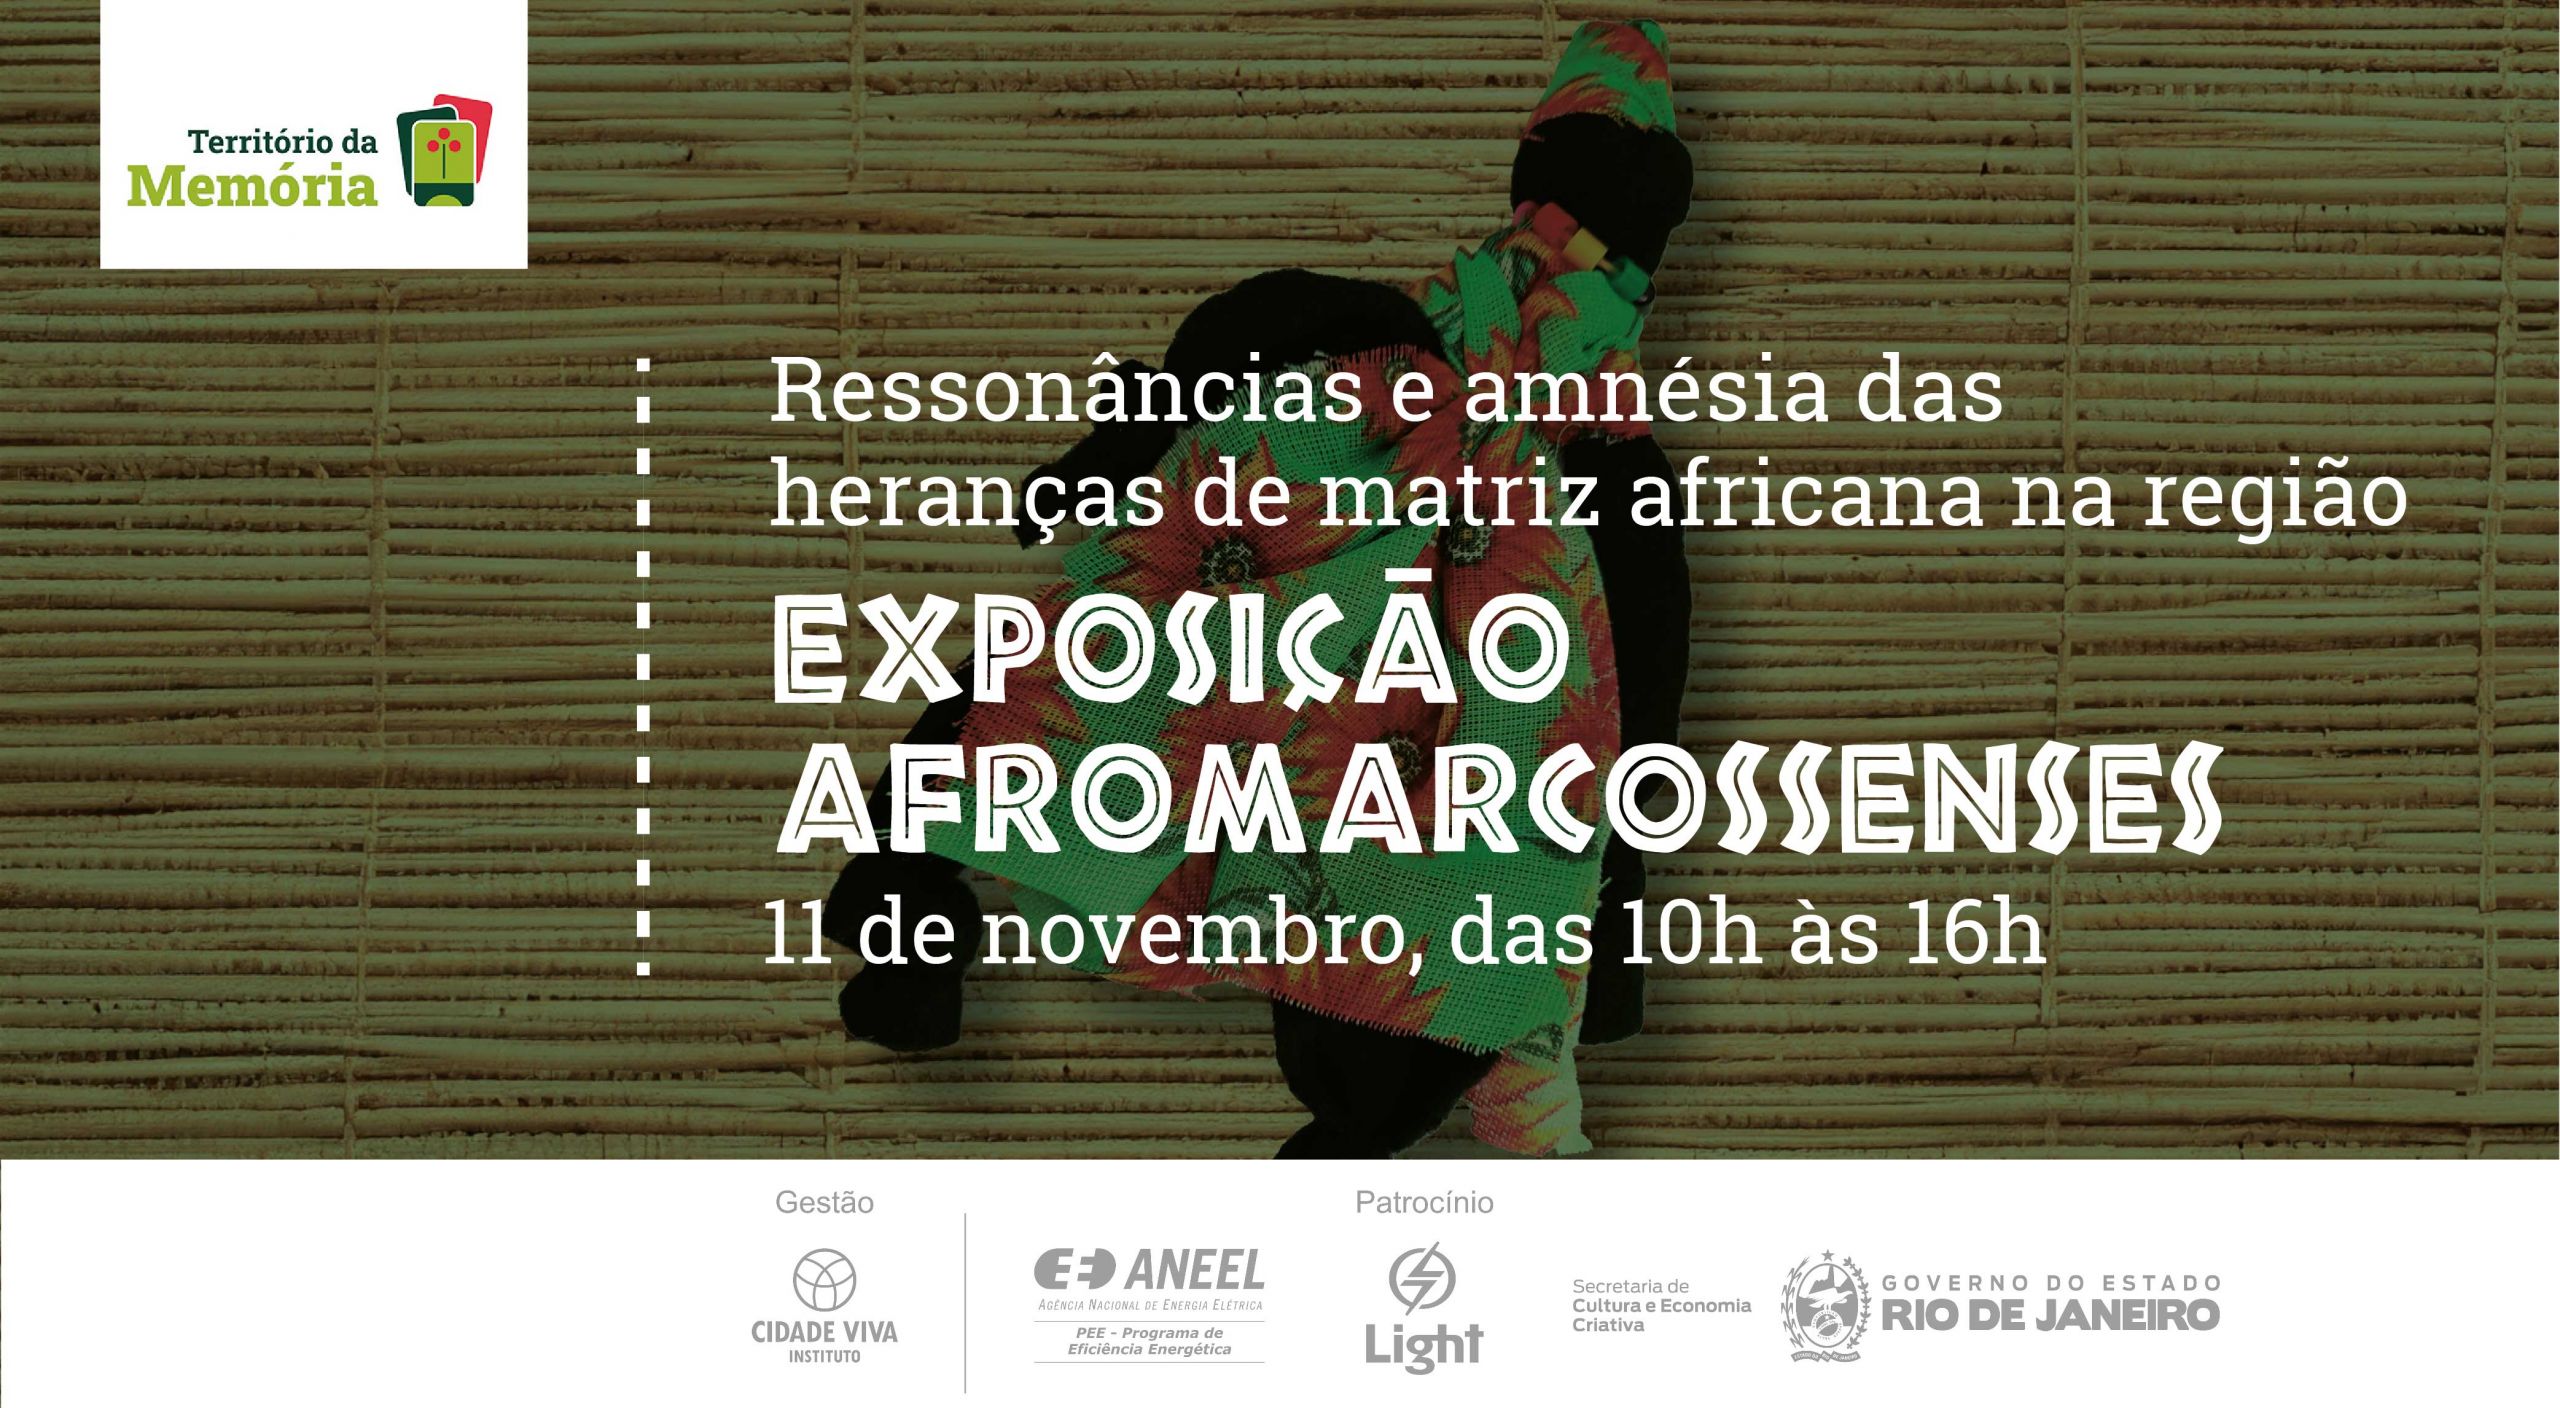 BLOG Exposição Afromarcossenses: ressonâncias e amnésia das heranças de matriz africana na região